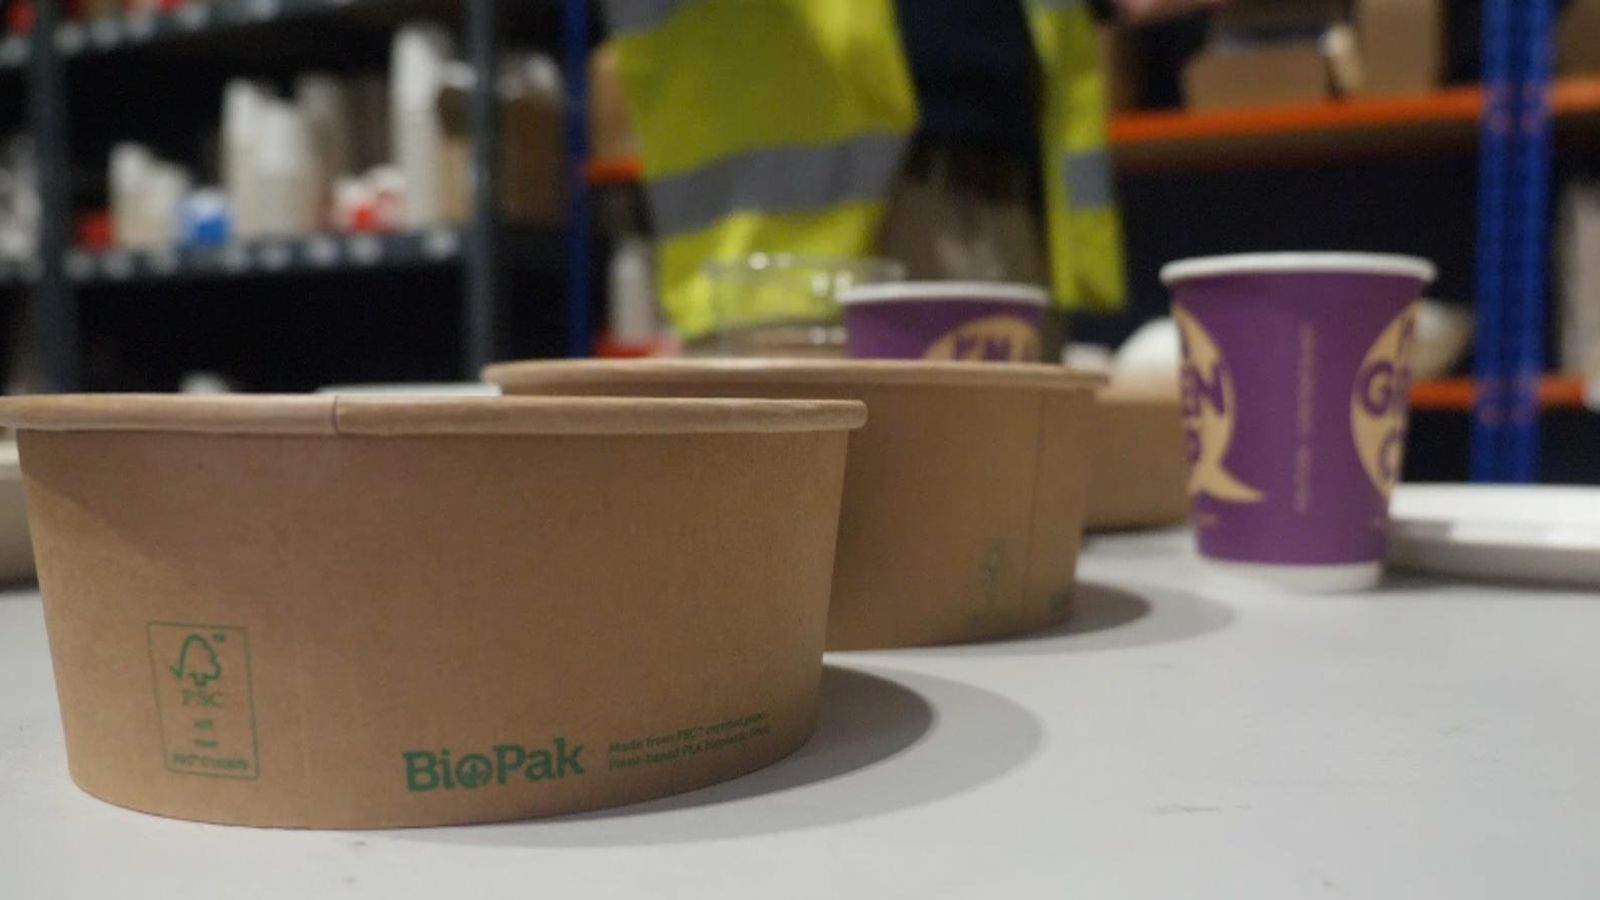 Първа спирка, BioPak, производител на компостируеми опаковки с фабрики в